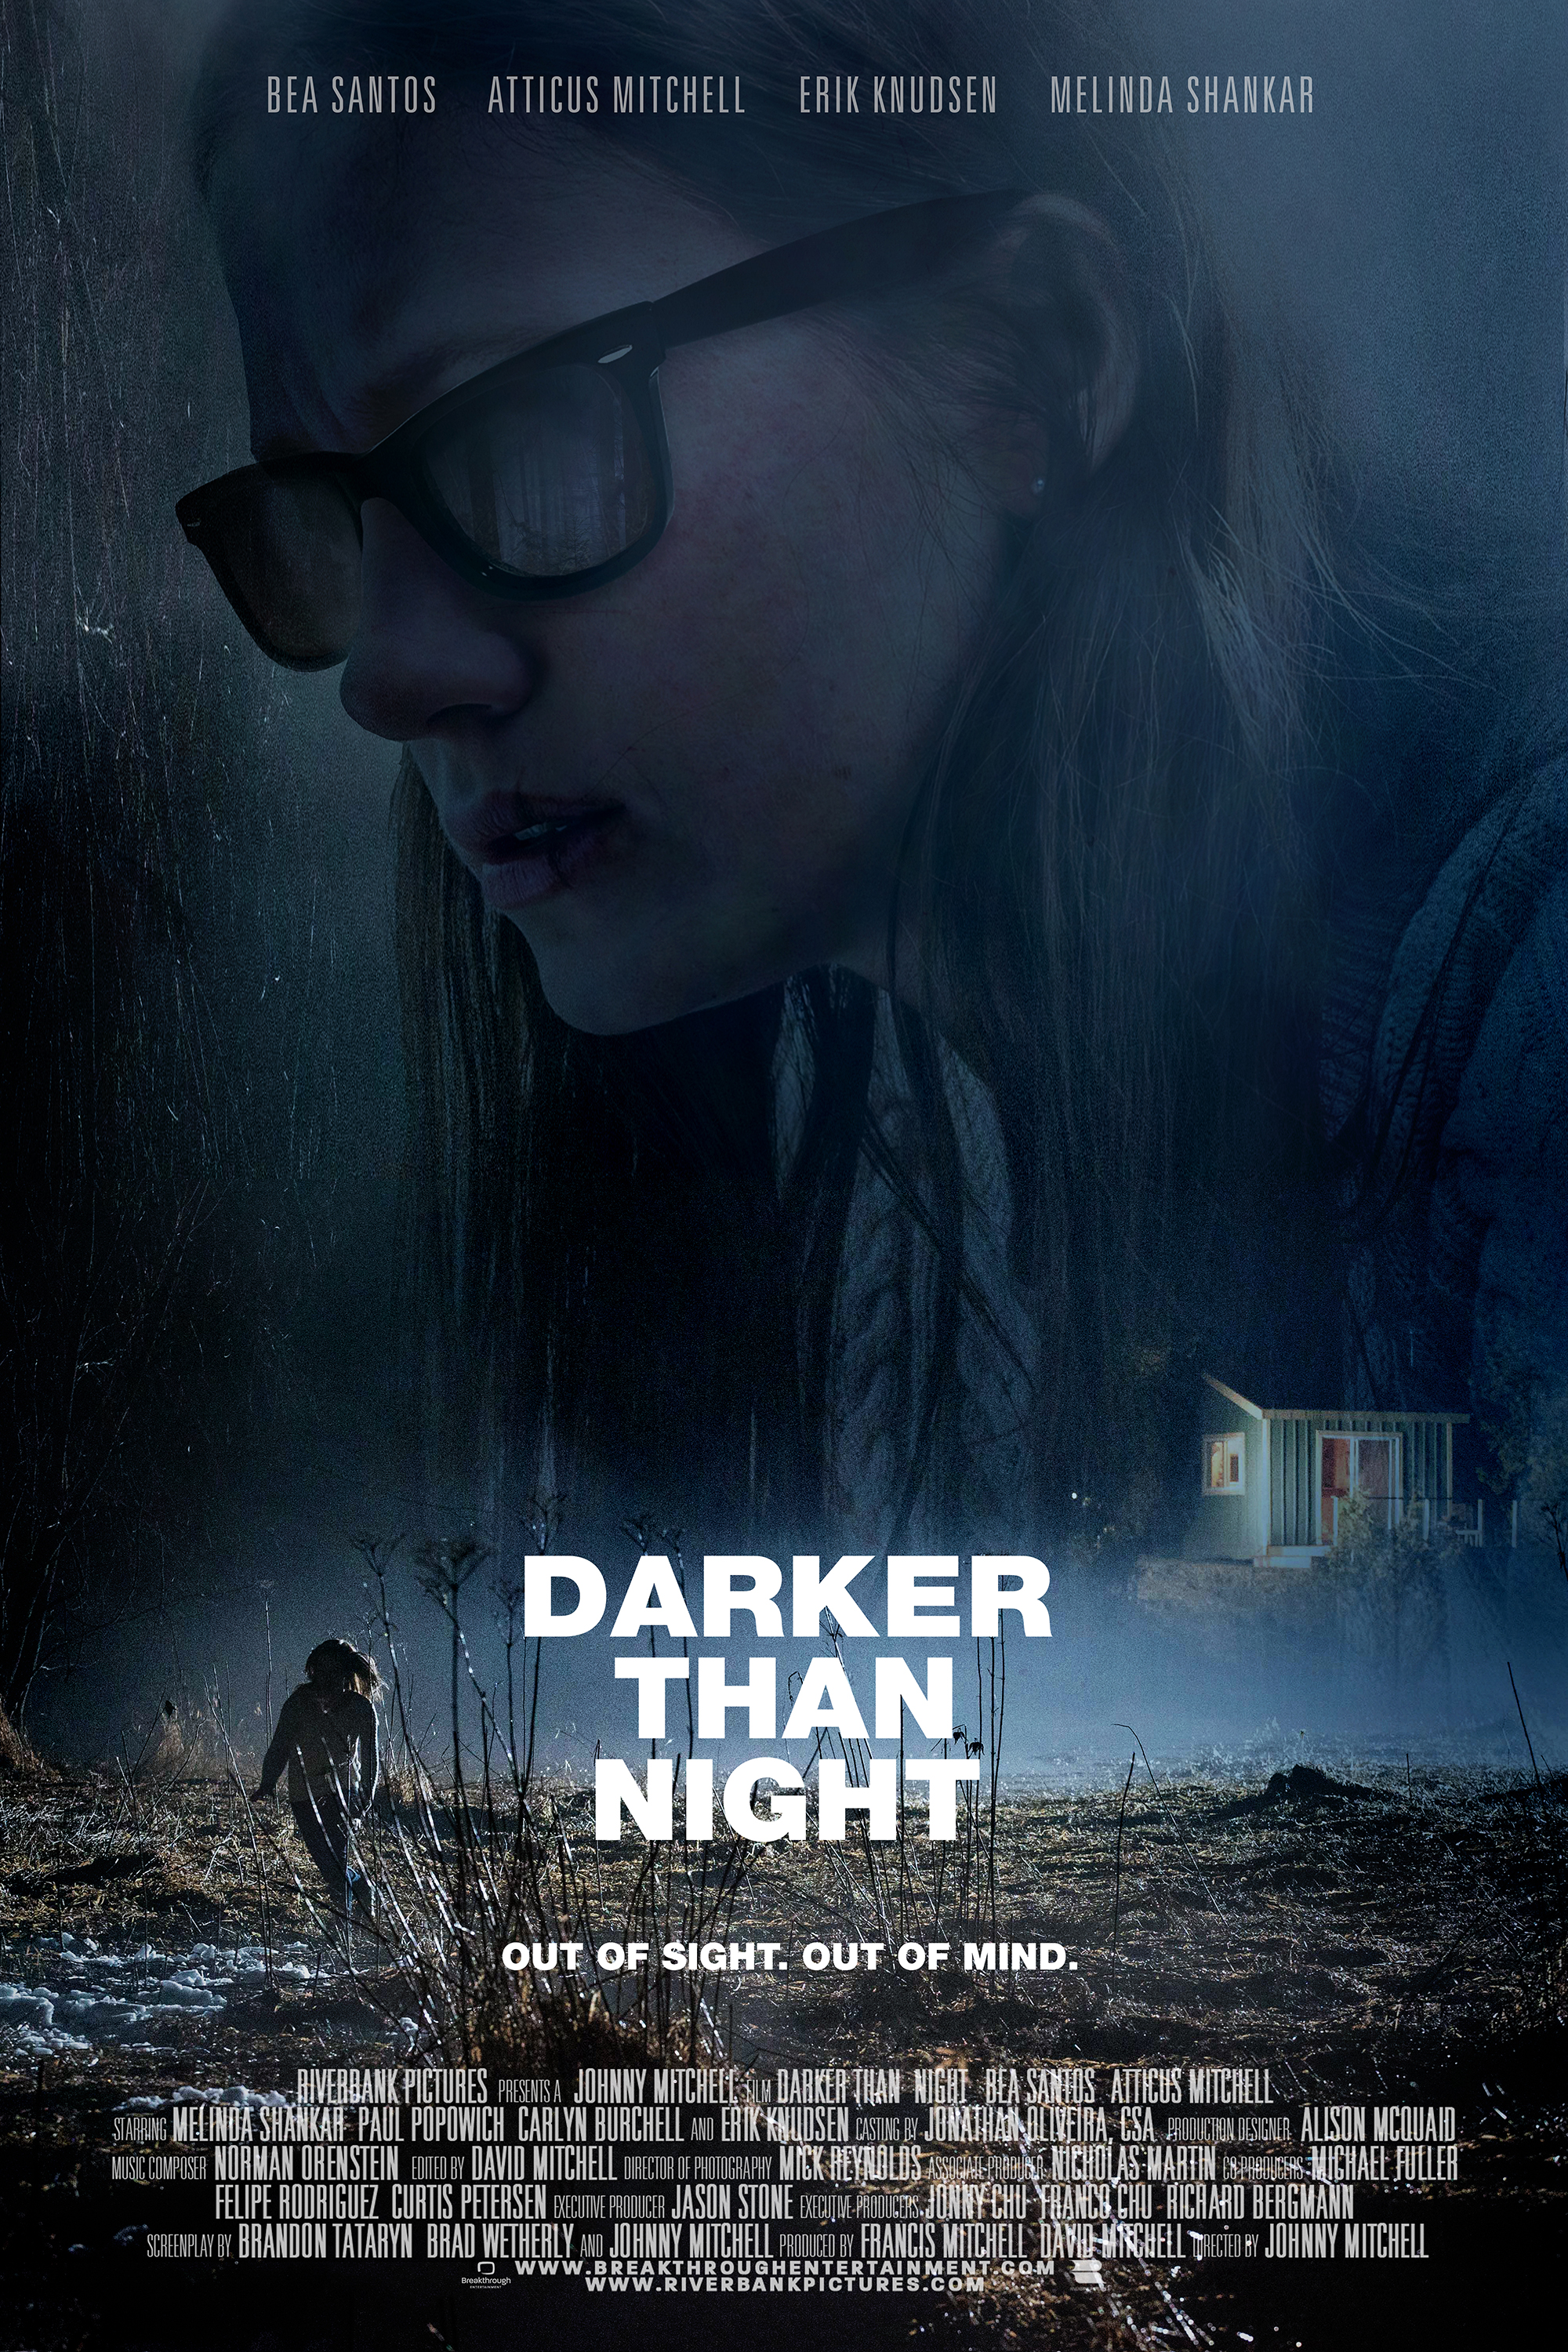 DarkerThanNight_Poster_